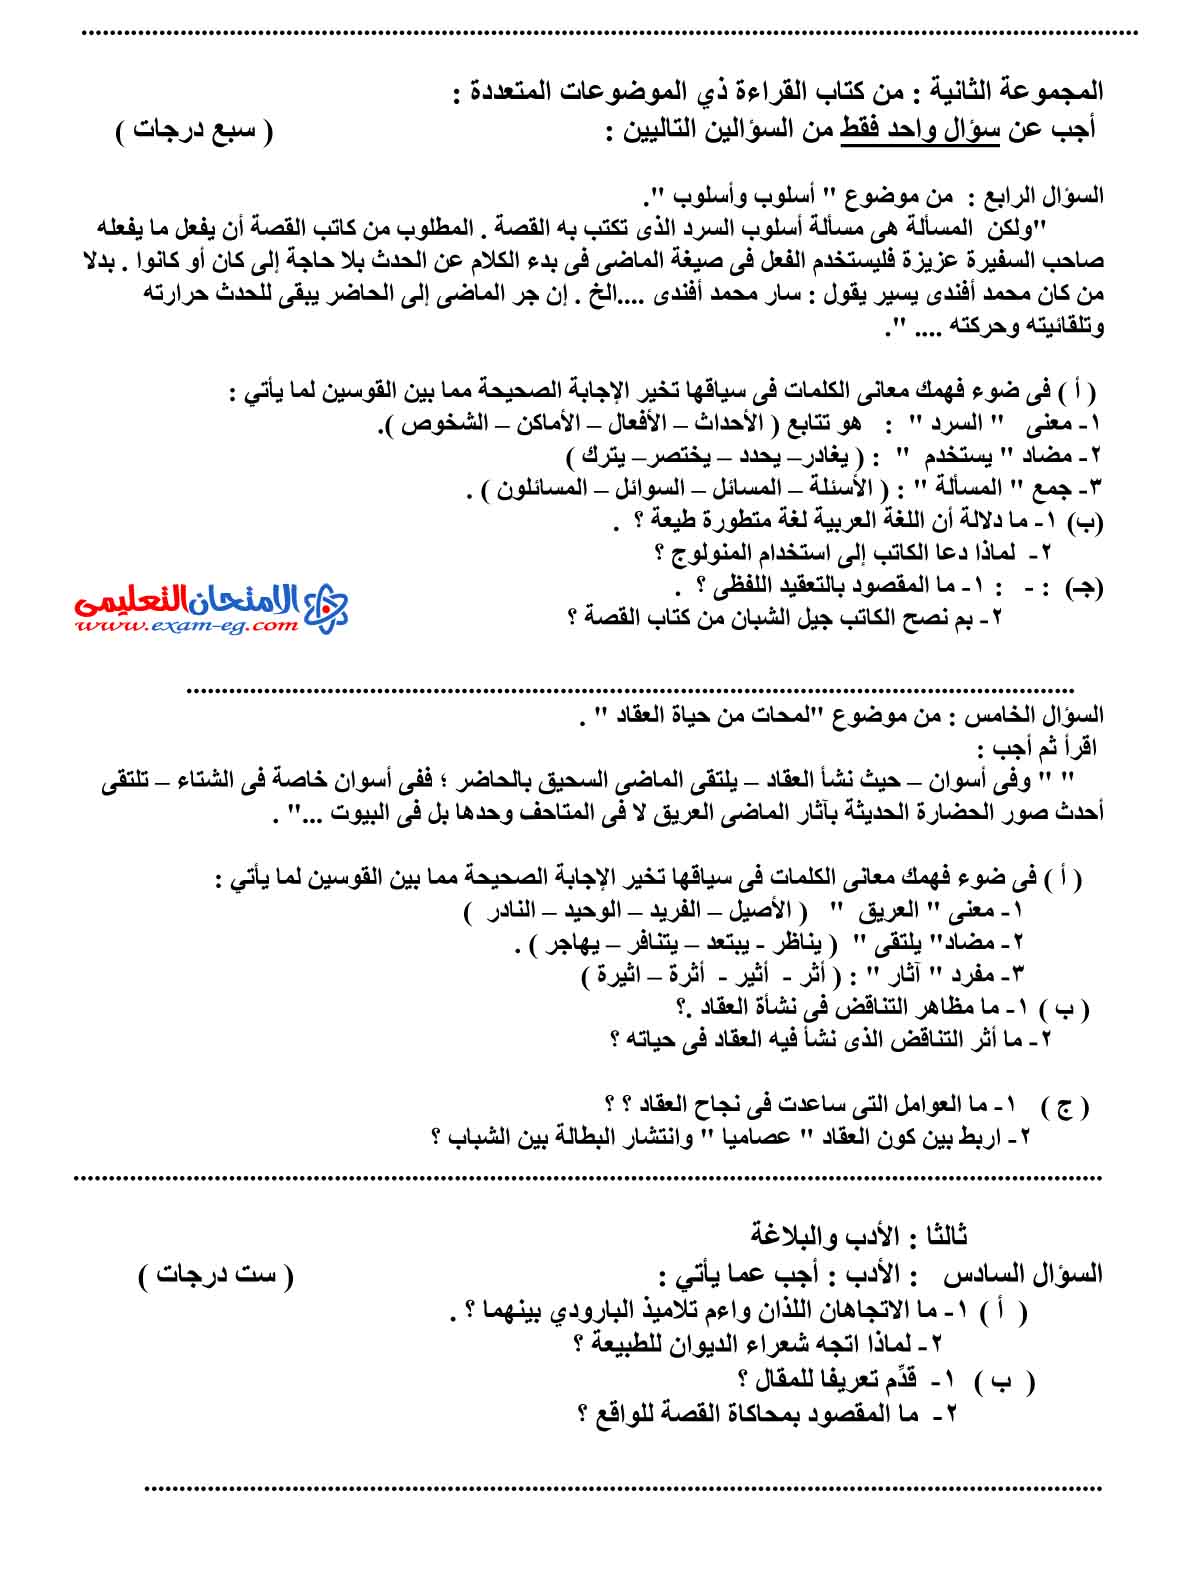 امتحان اللغة العربية 4 - مدرسة اون لاين (2)